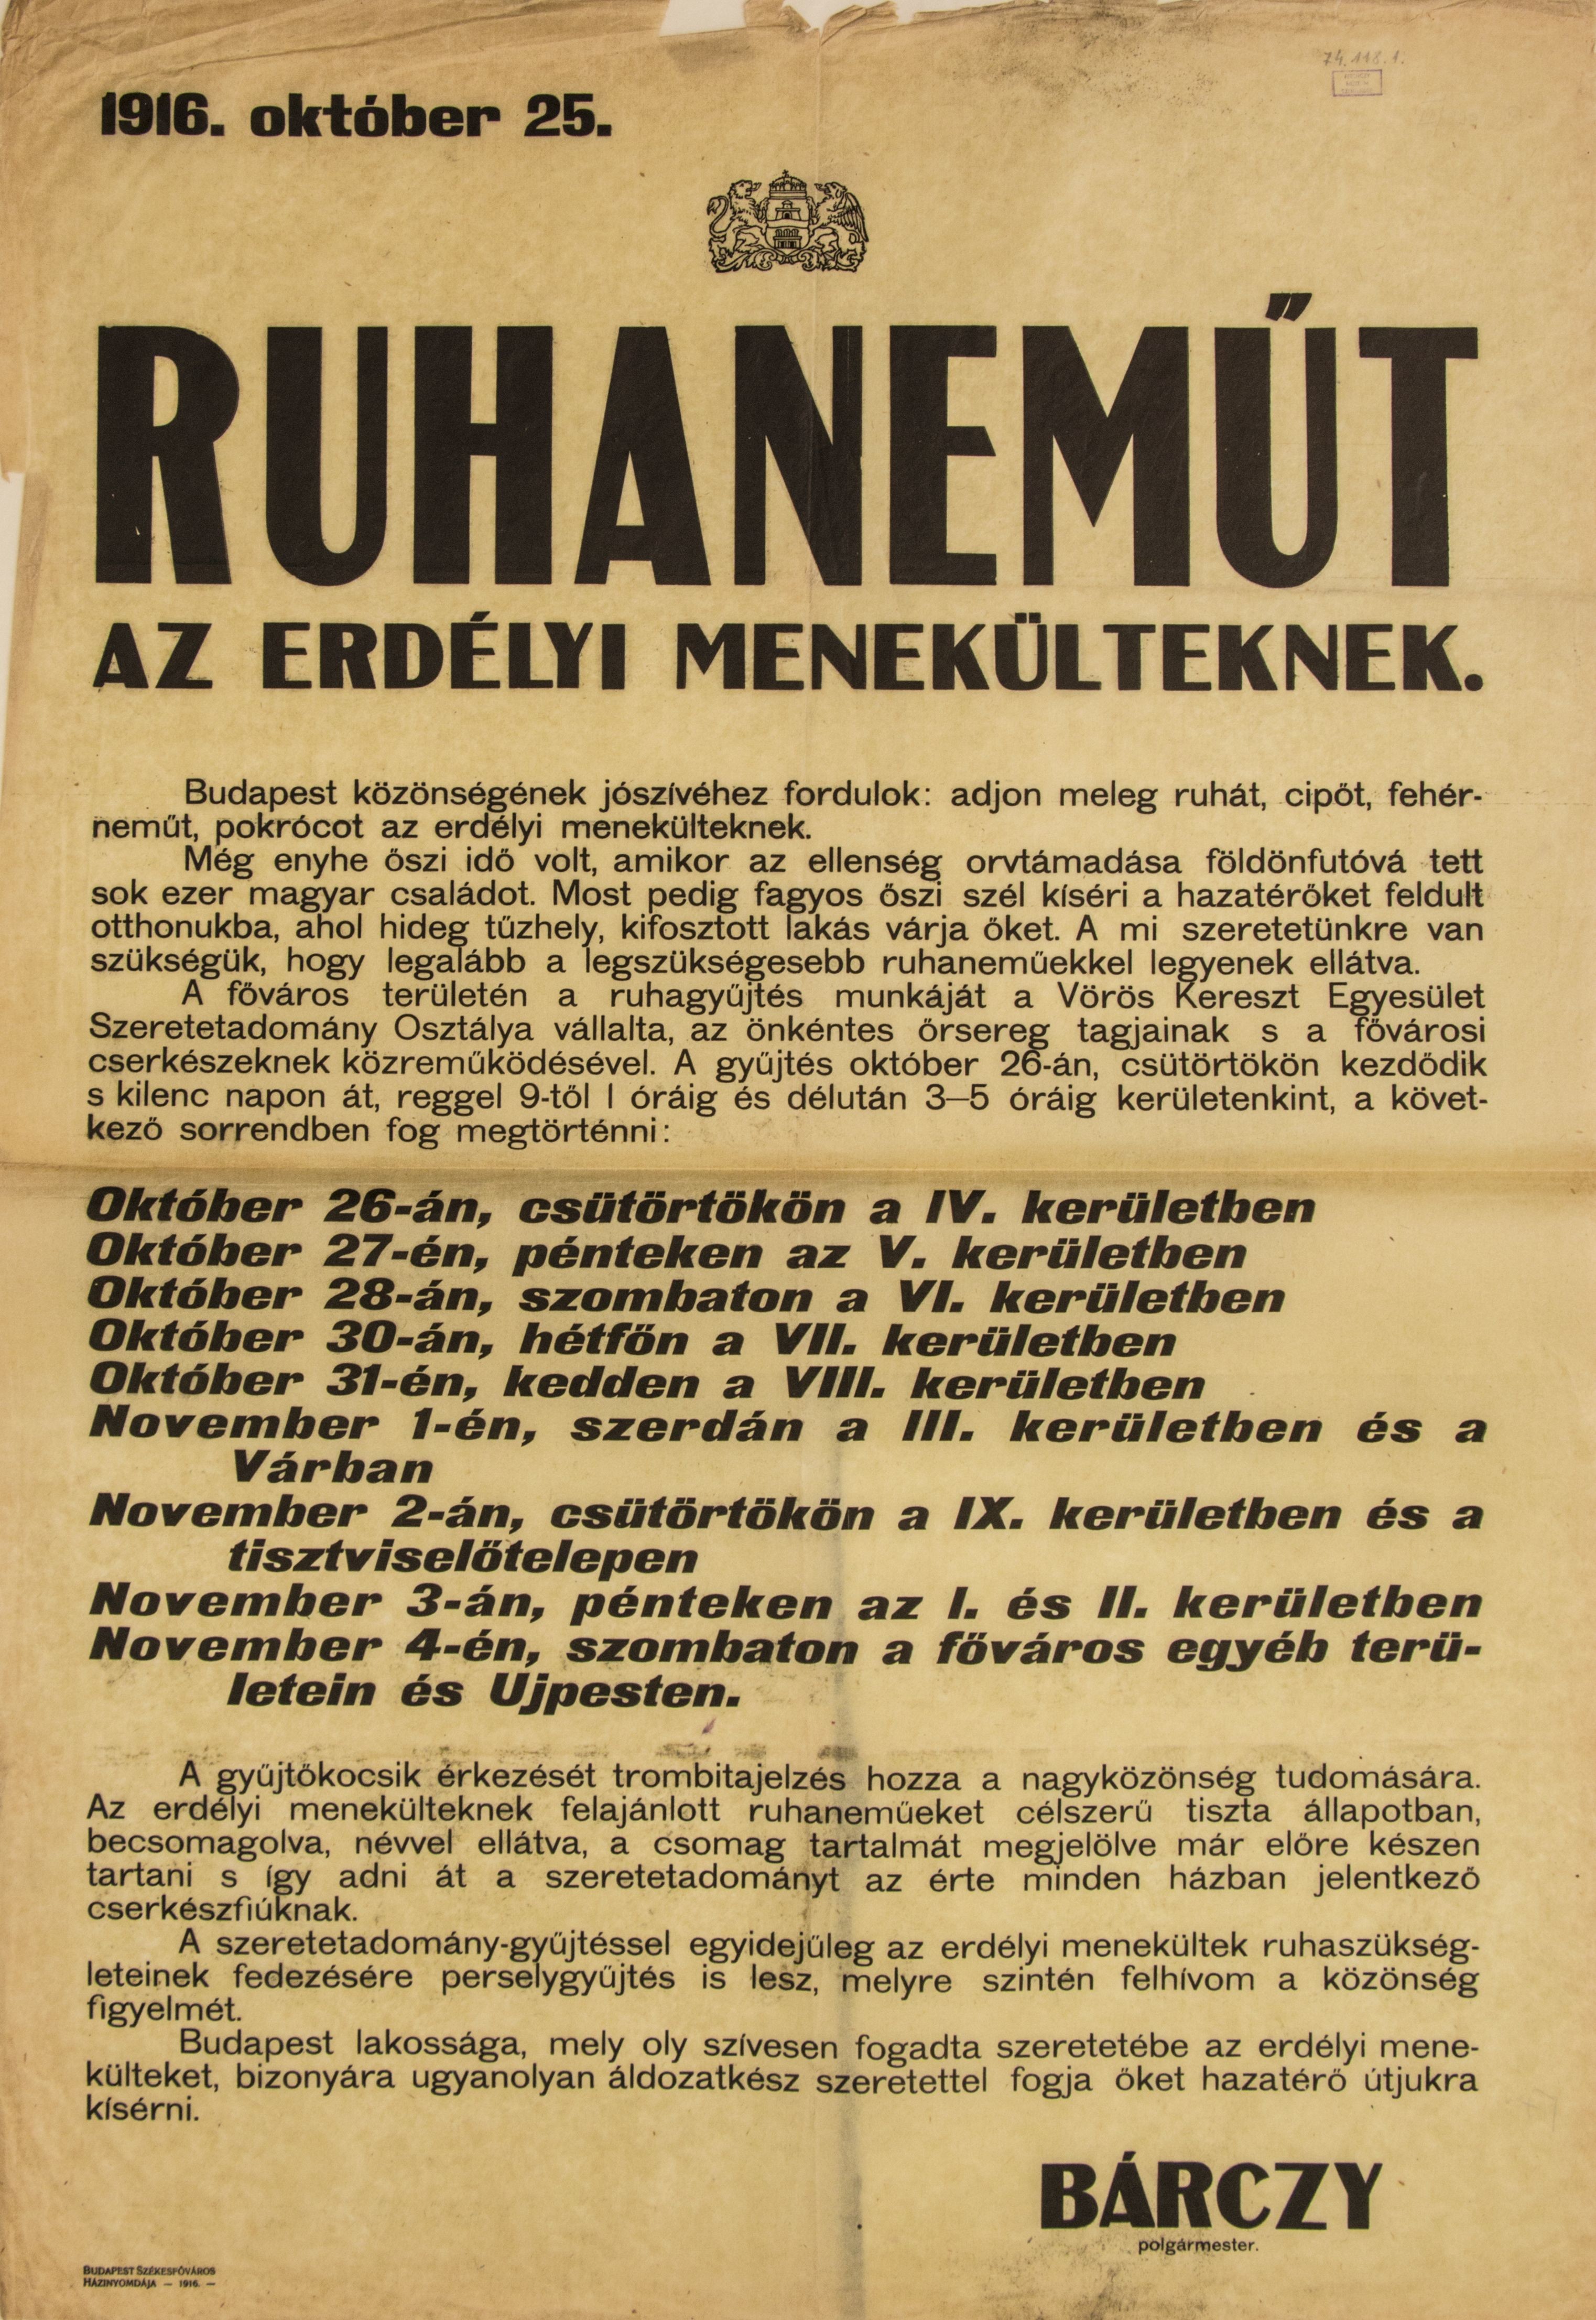 "Ruhaneműt az erdélyi menekülteknek!" 1916.10.25. (zöld - fekete betű) (Ferenczy Múzeumi Centrum CC BY-NC-SA)